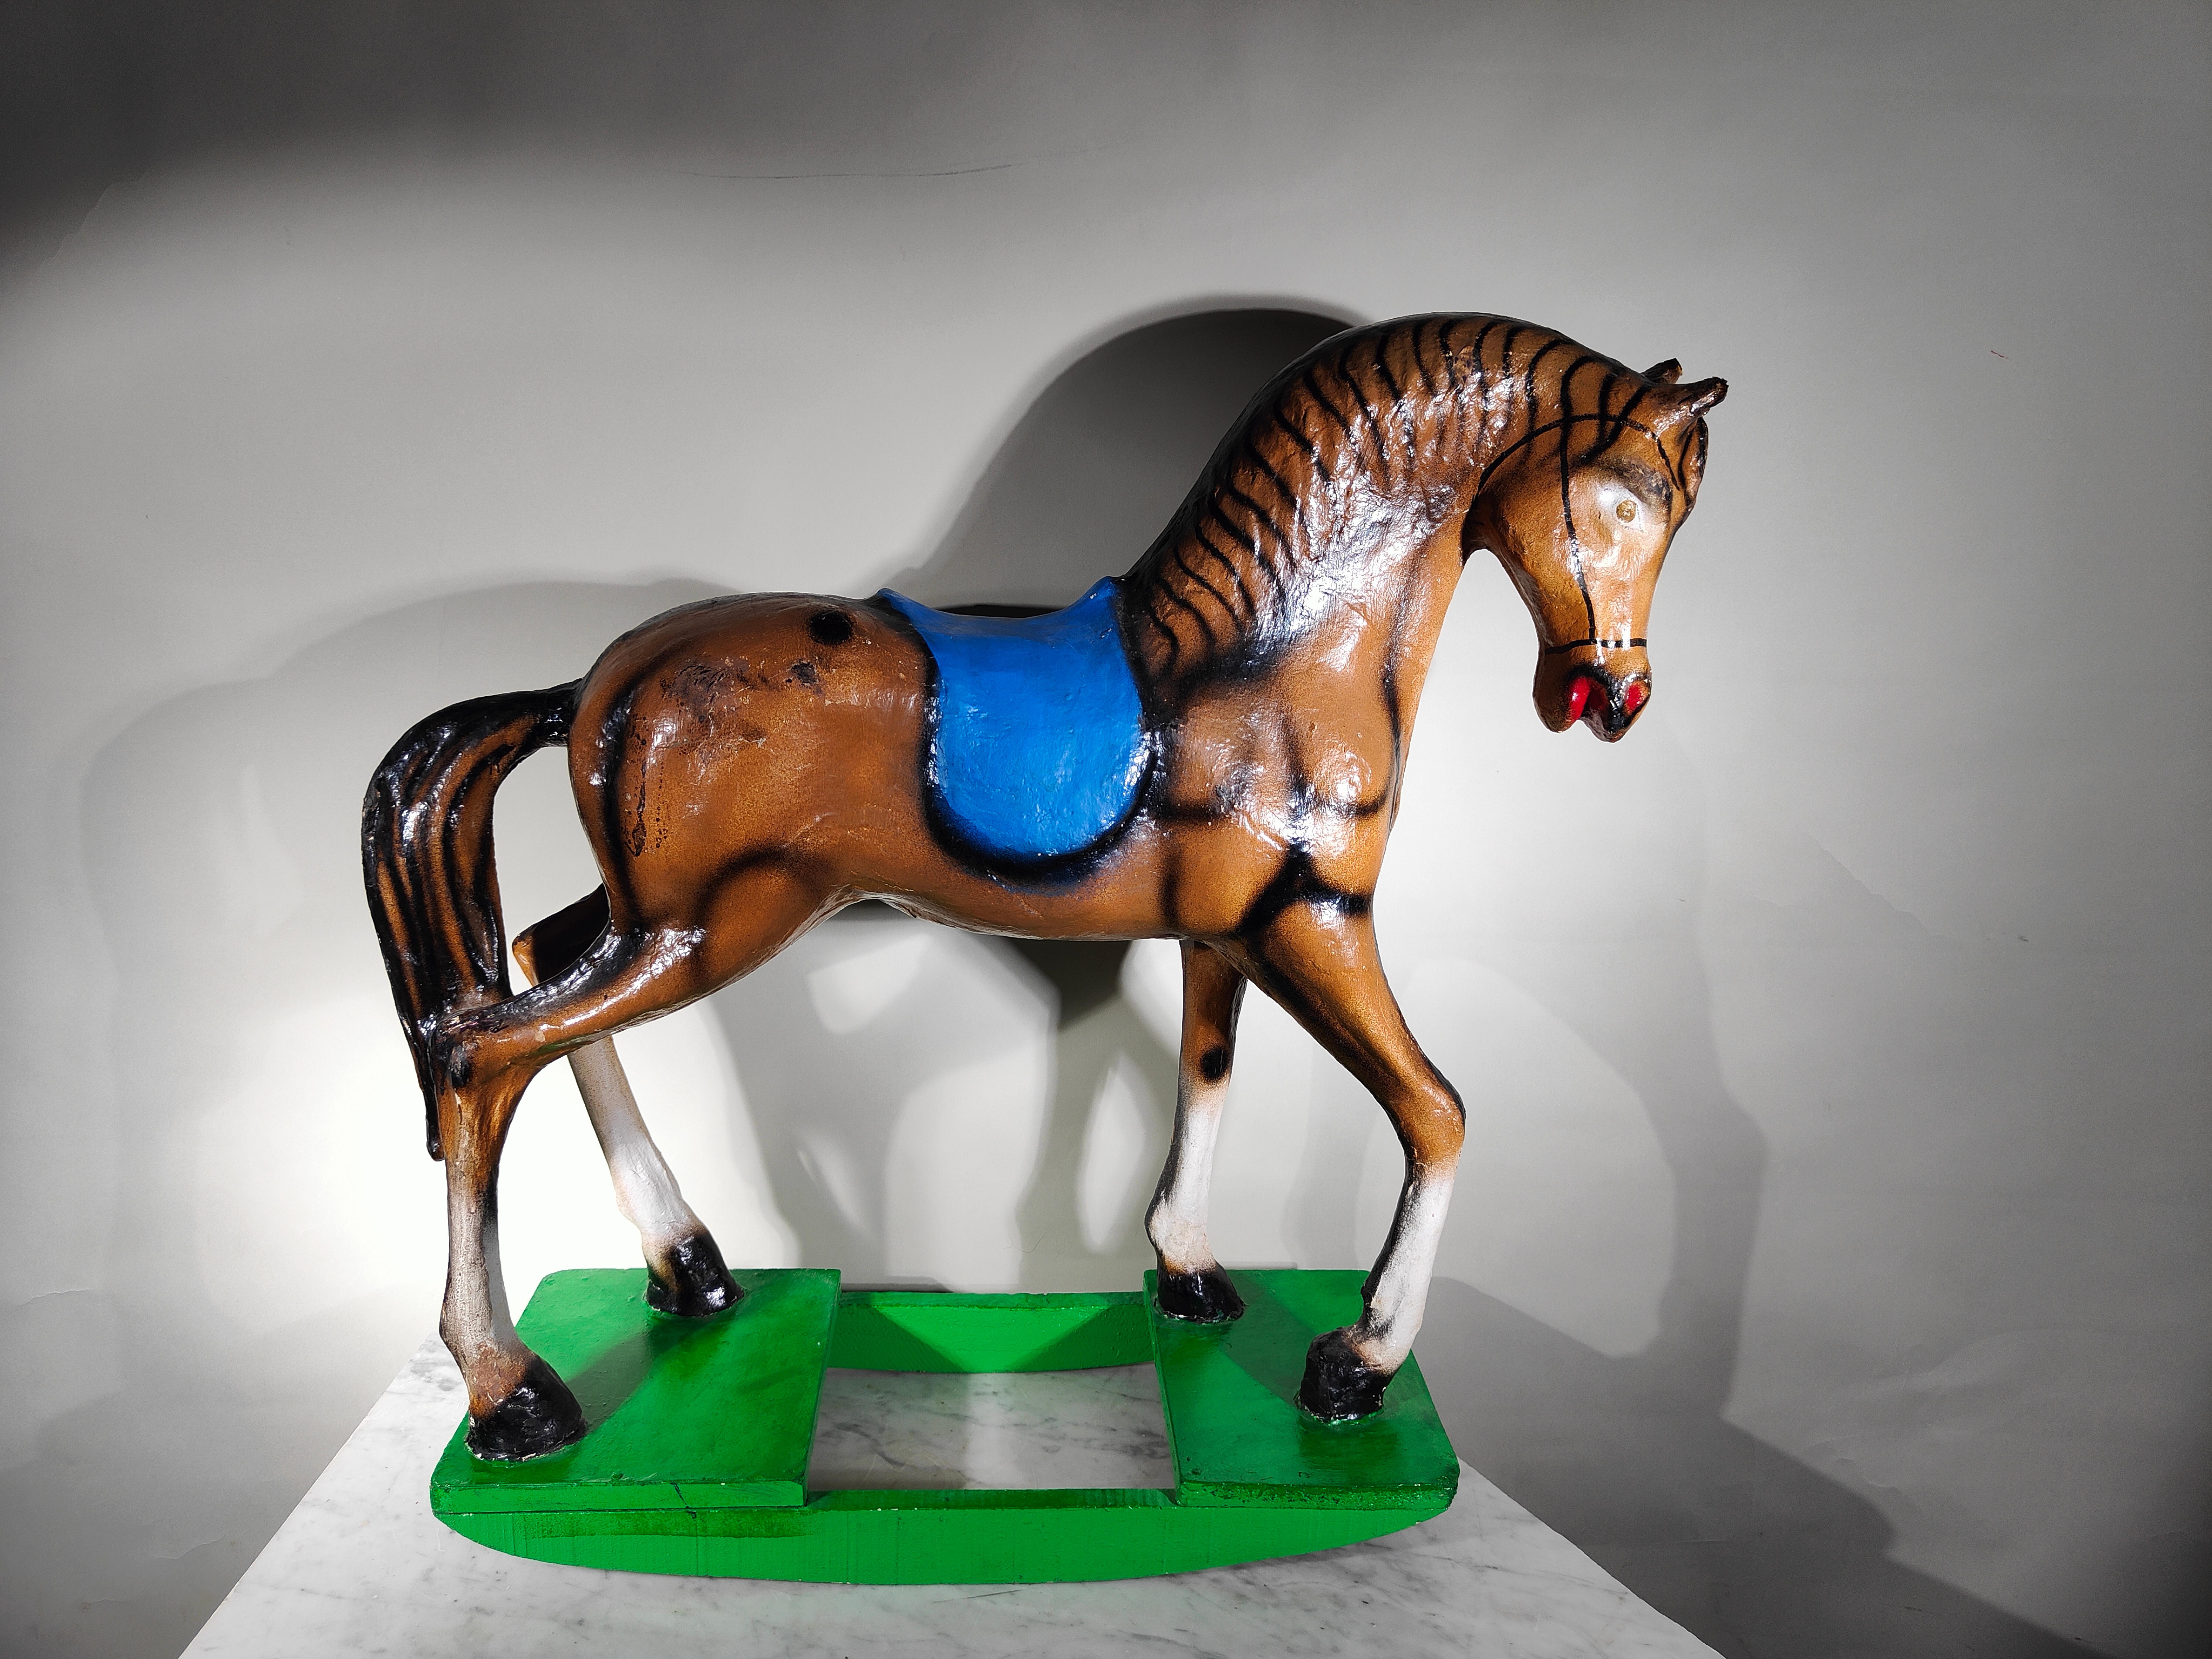 Decorative rocking horse made of papier-mâché, 1950s
Measurements: 70 x 28 x 59 cms.